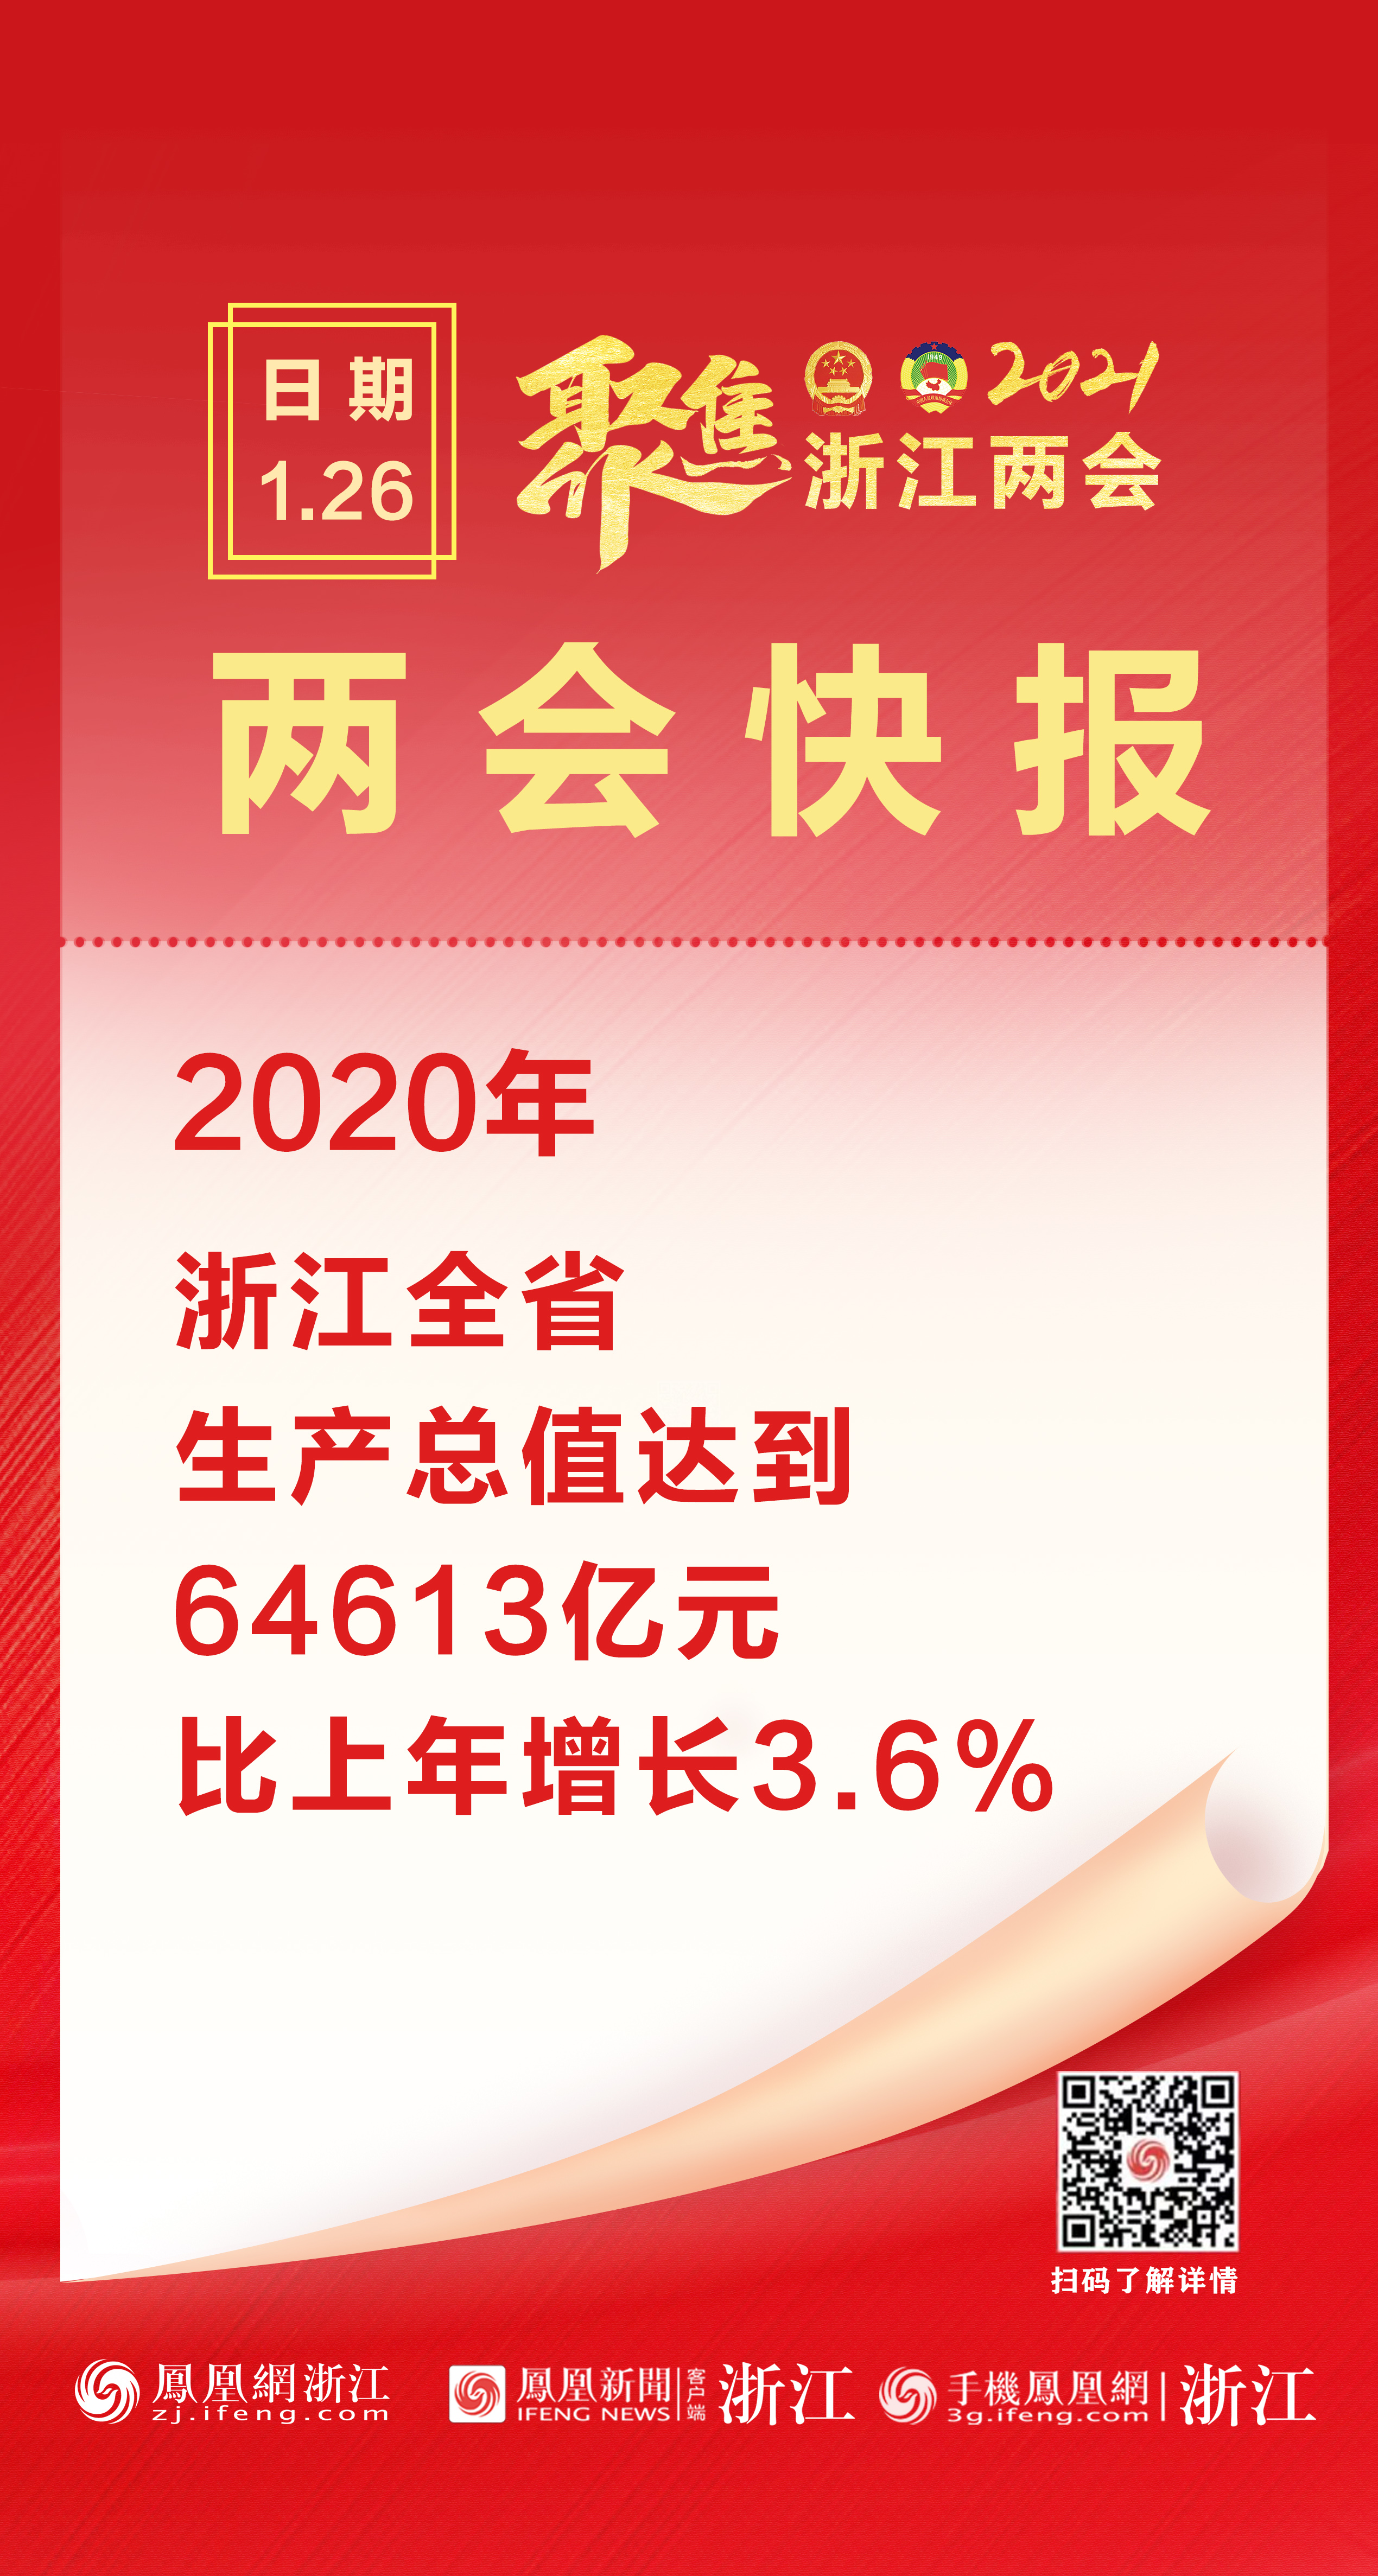 2020浙江省GDP总量64613亿元 同比增长3.6%